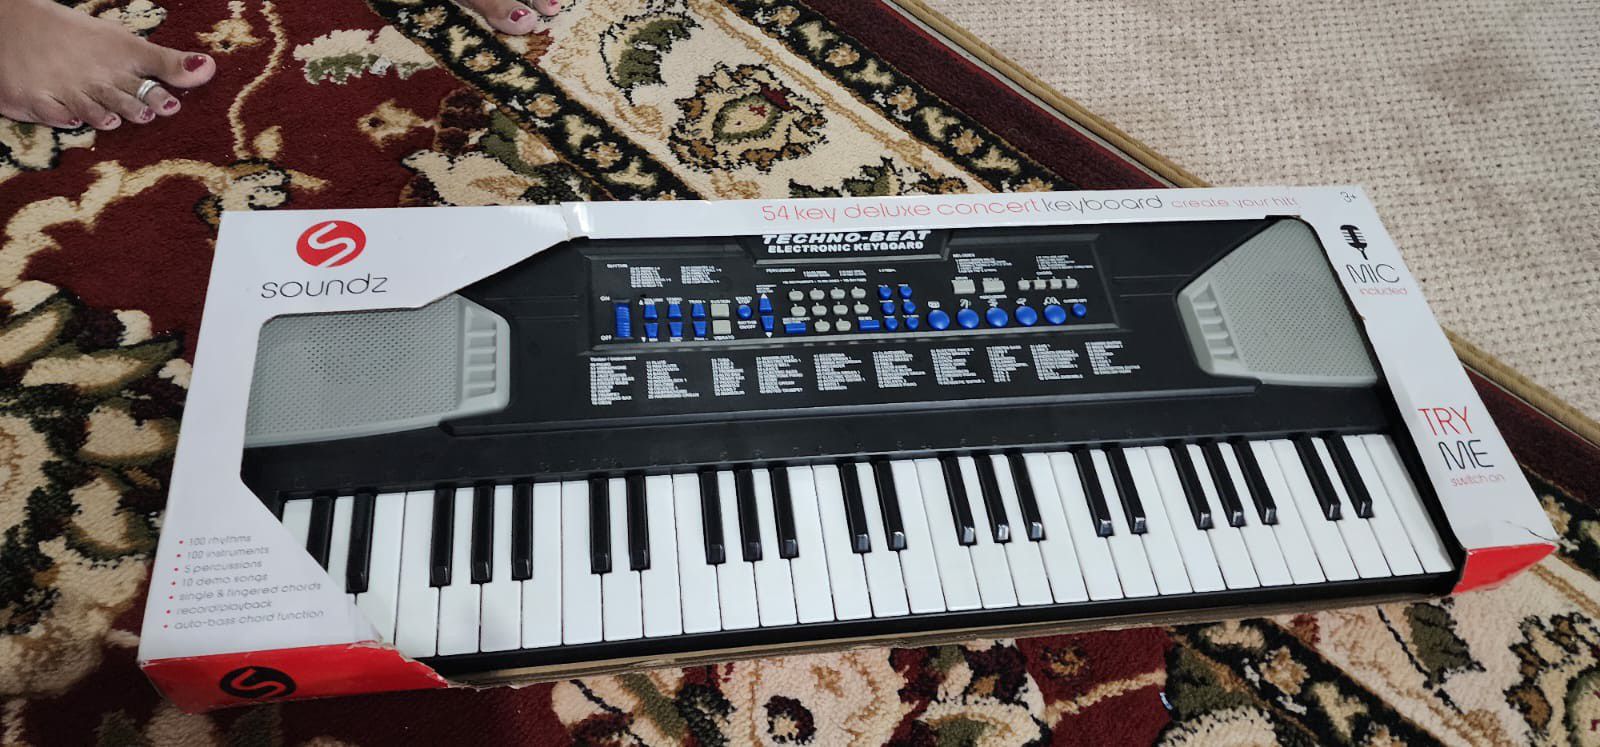 Techno Beat Keyboard